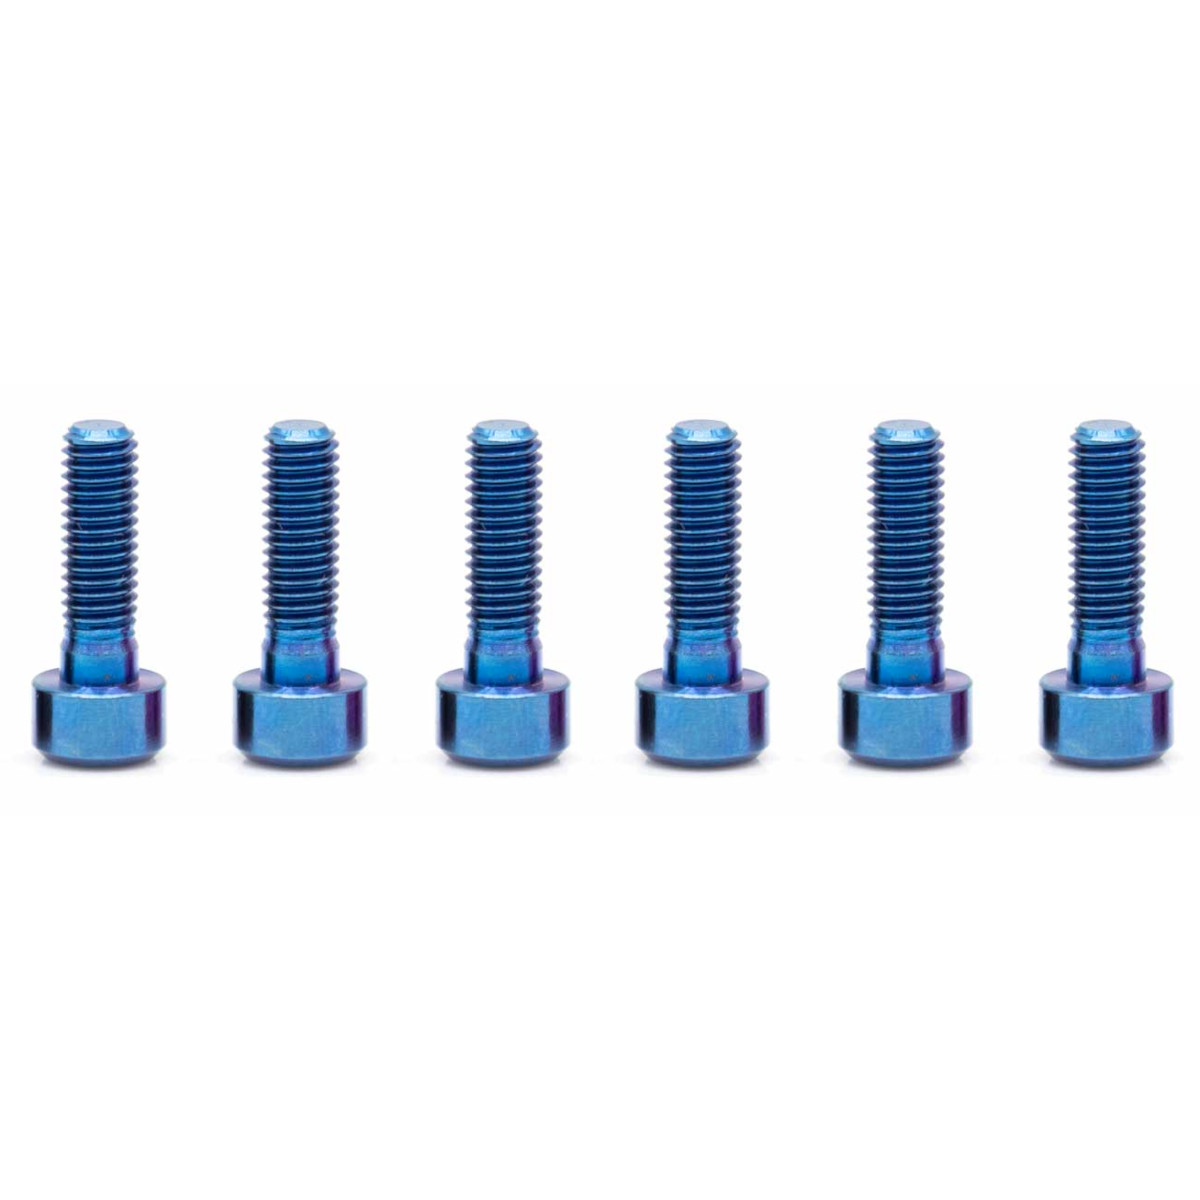 Produktbild von OAK Components Titanschrauben Set - M5x16mm - blau